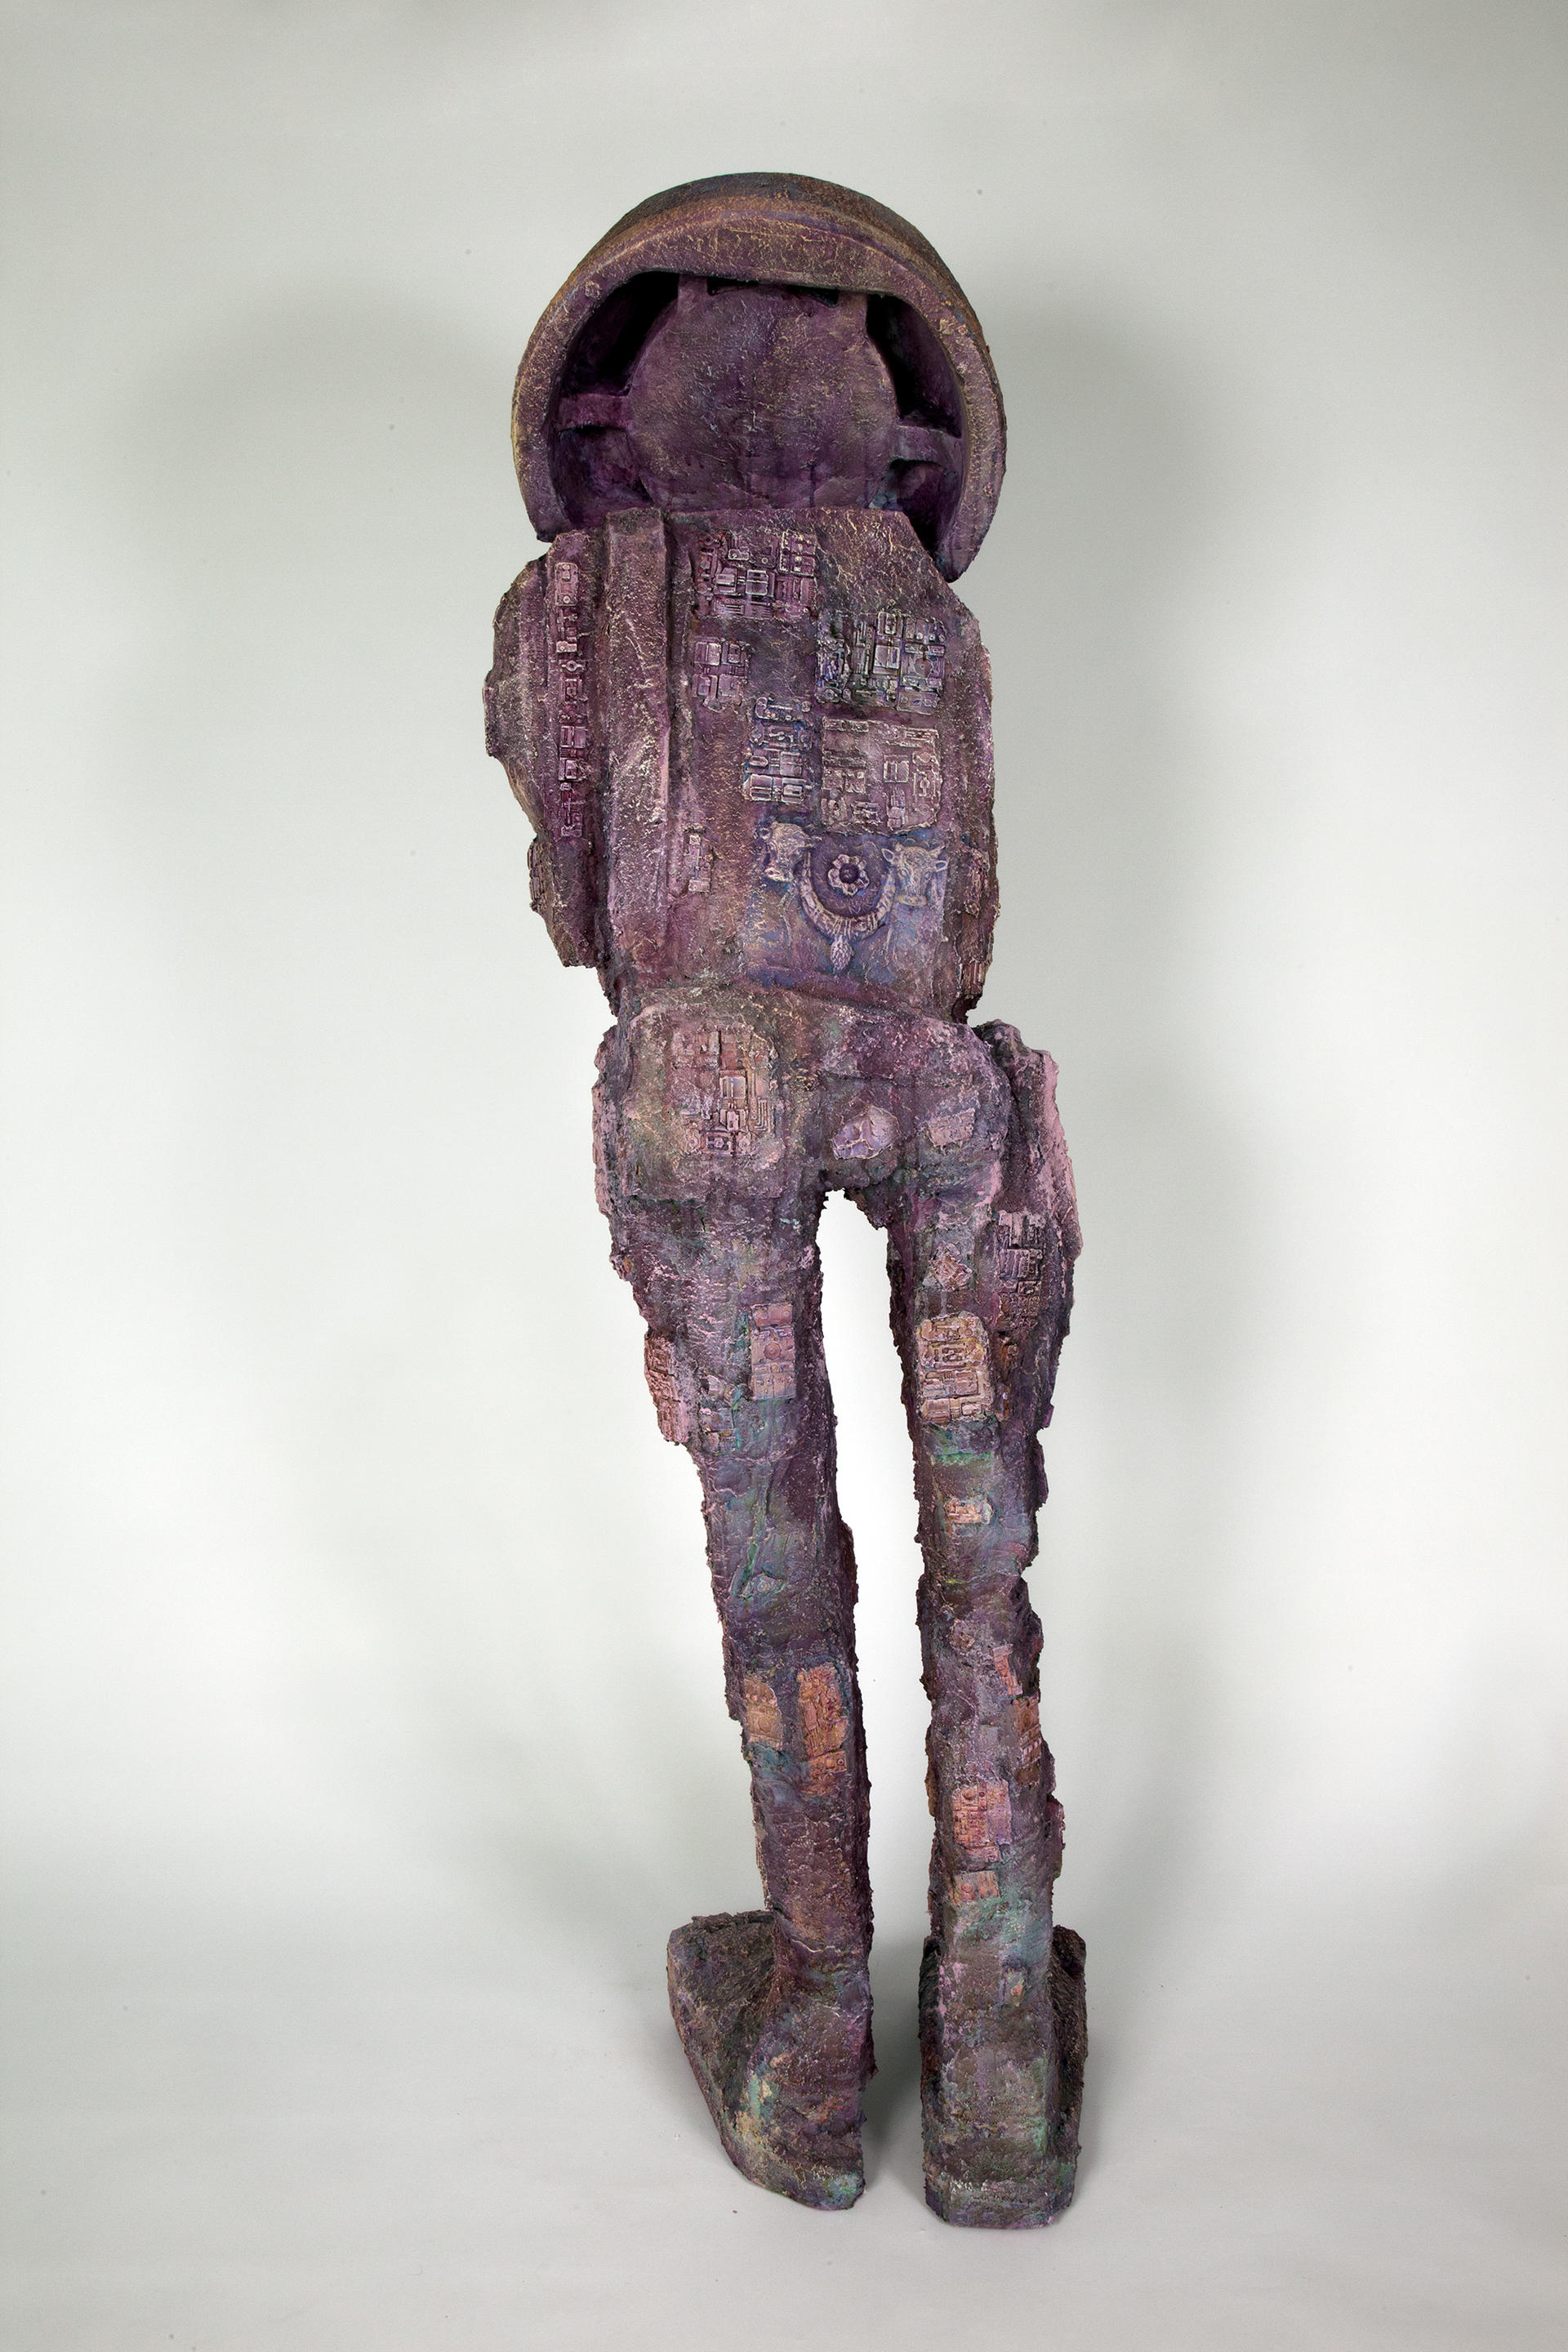 Image of a purple robotic figure